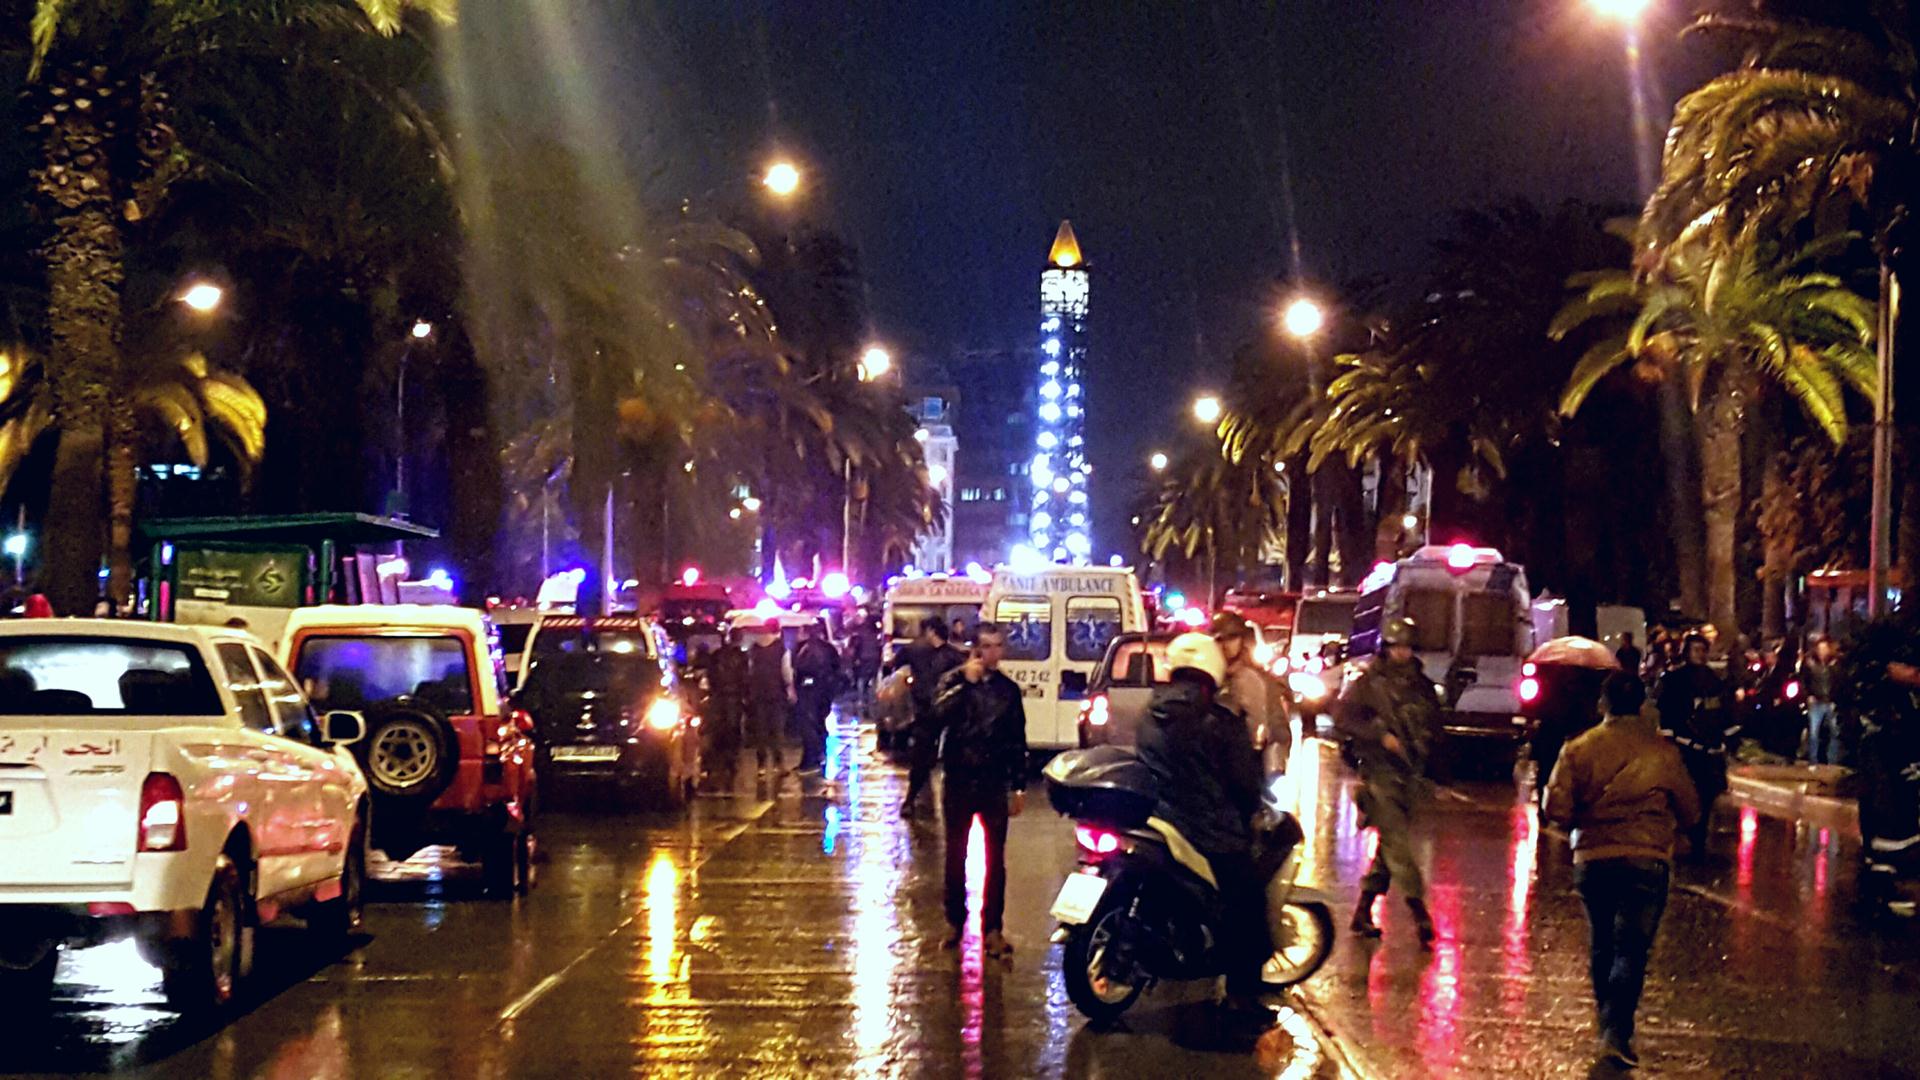 الهجوم الانتحاري بشارع محمد الخامس بوسط العاصمة تونس بتاريخ 24 نوفمبر 2015/ عدسة لسعد بن عاشور 